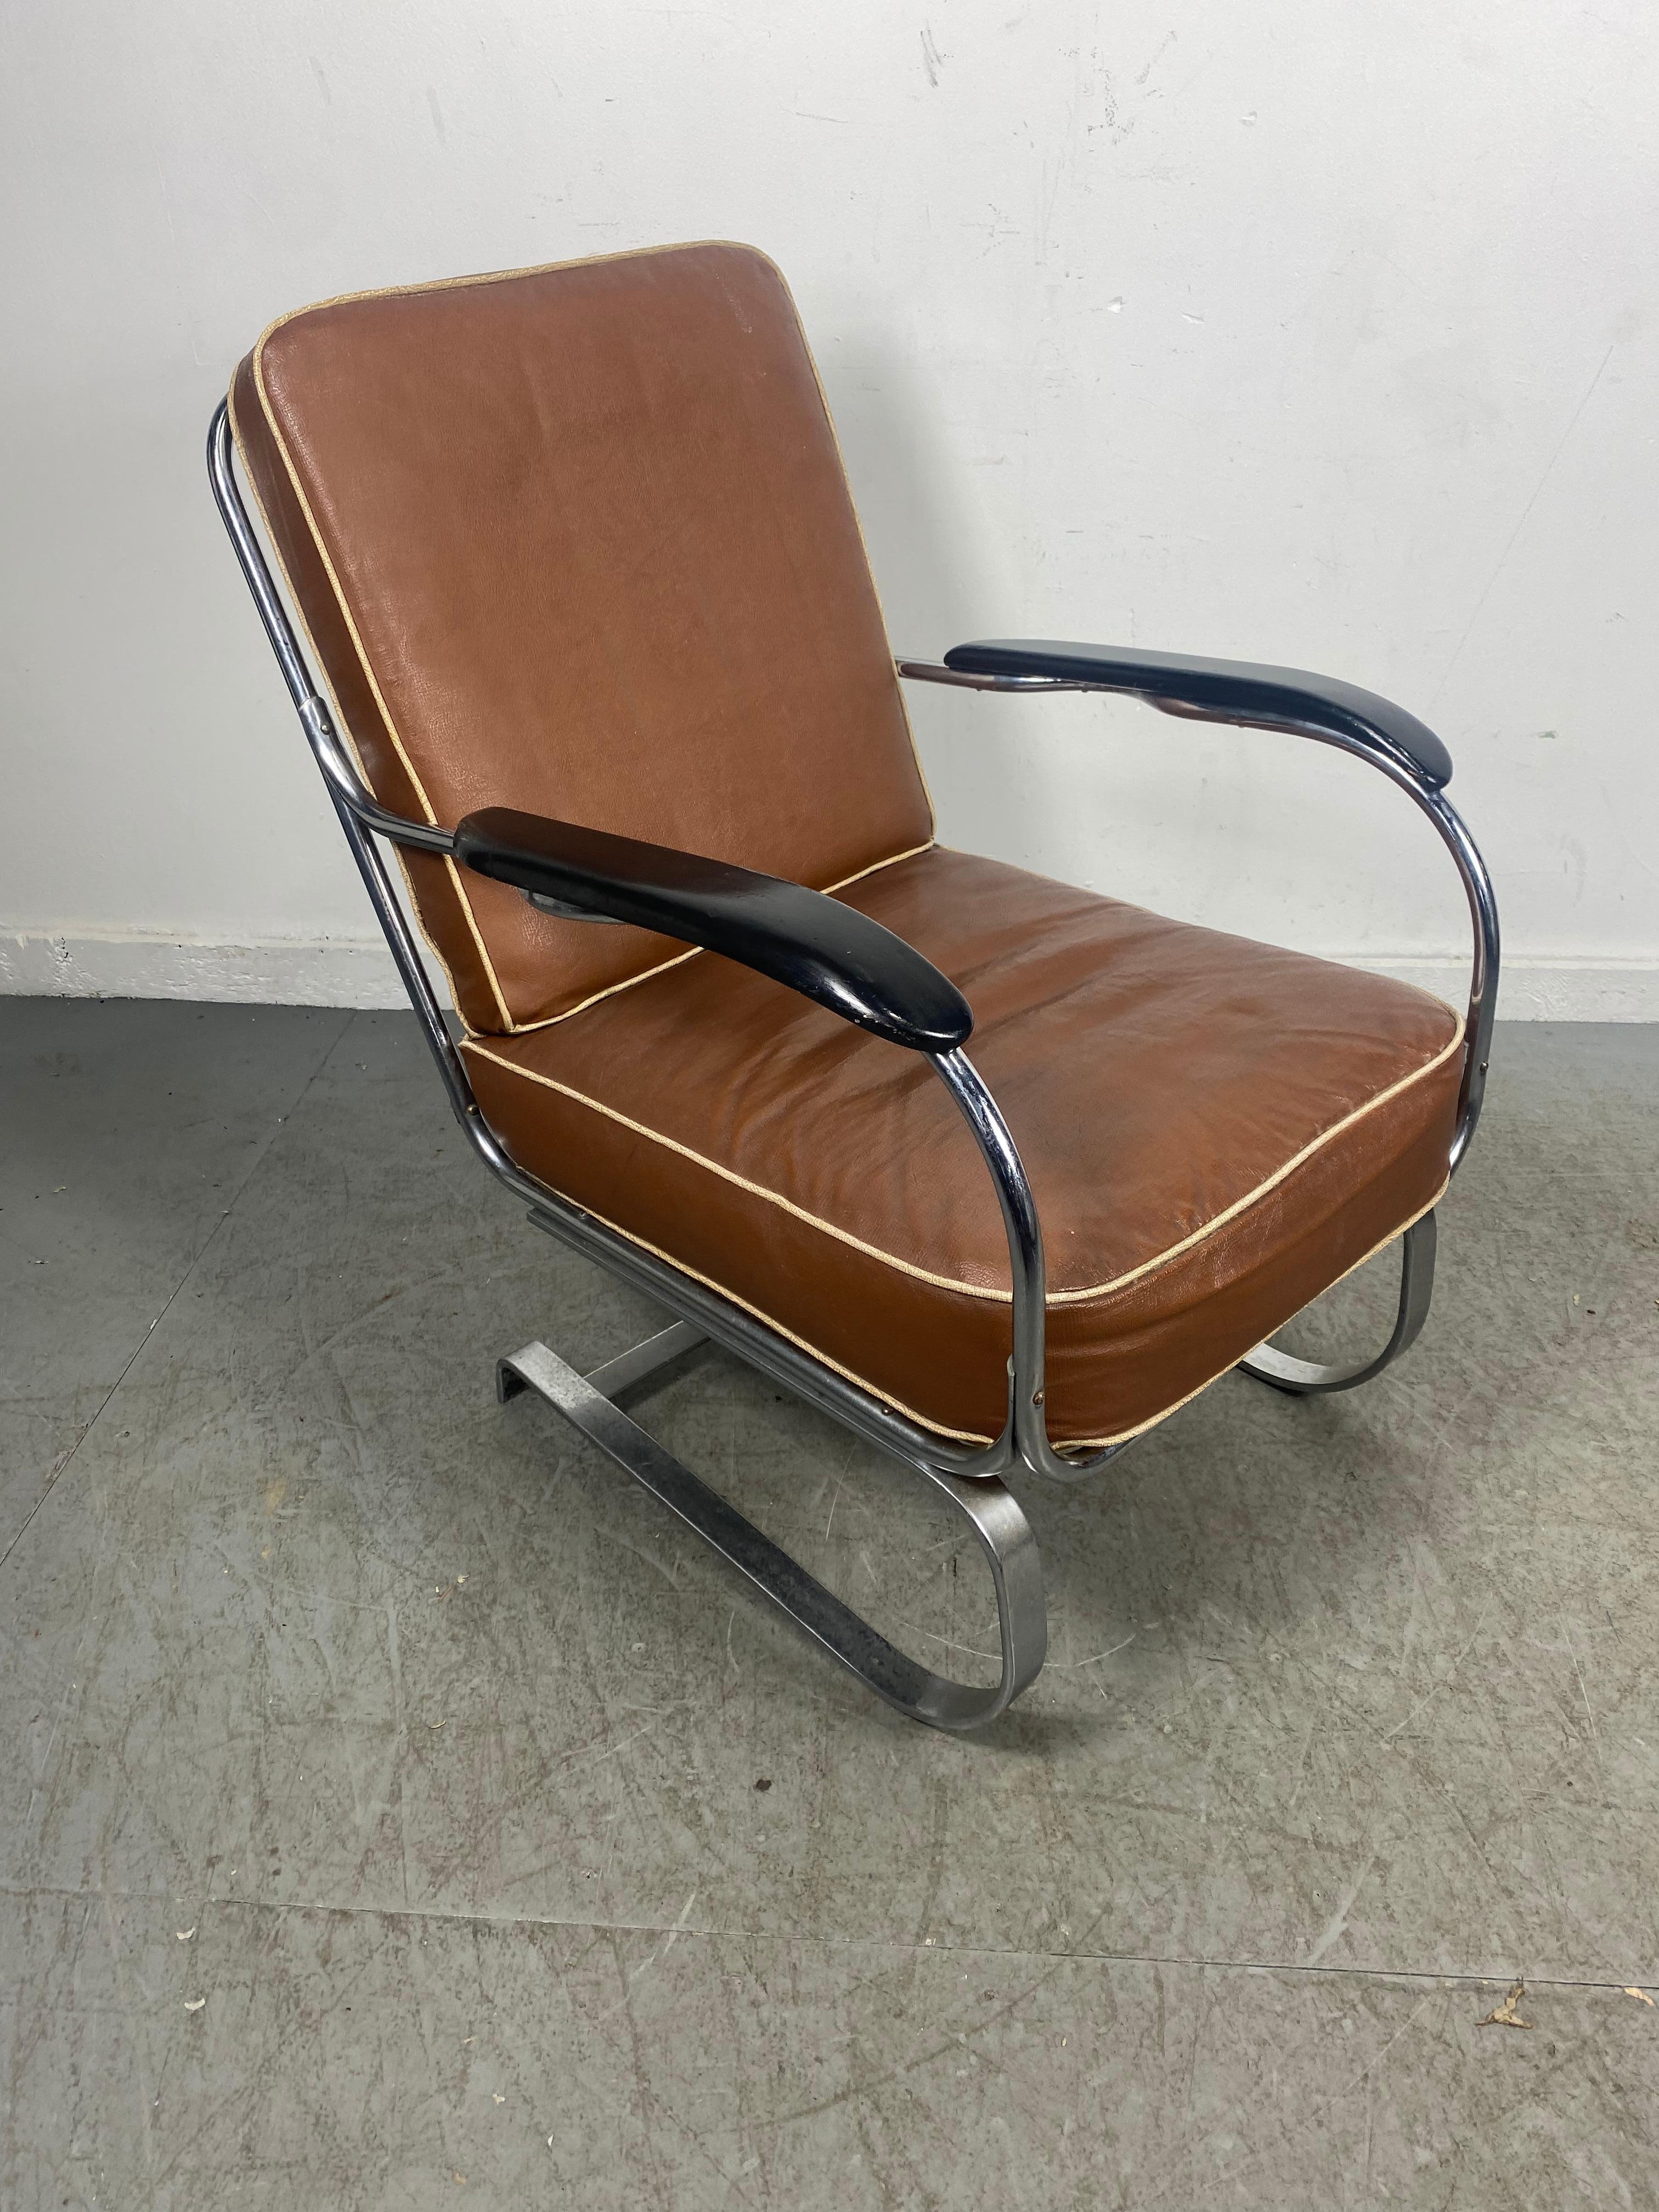 Ce fauteuil Art déco américain extrêmement confortable a été conçu, vers 1935, pour Lloyd Manufacturing par Karl Emmanuel Martin (KEM) Weber (1889 -1963).

Invisible ! Totalement original. Un véritable survivant. Connues sous le nom de chaise